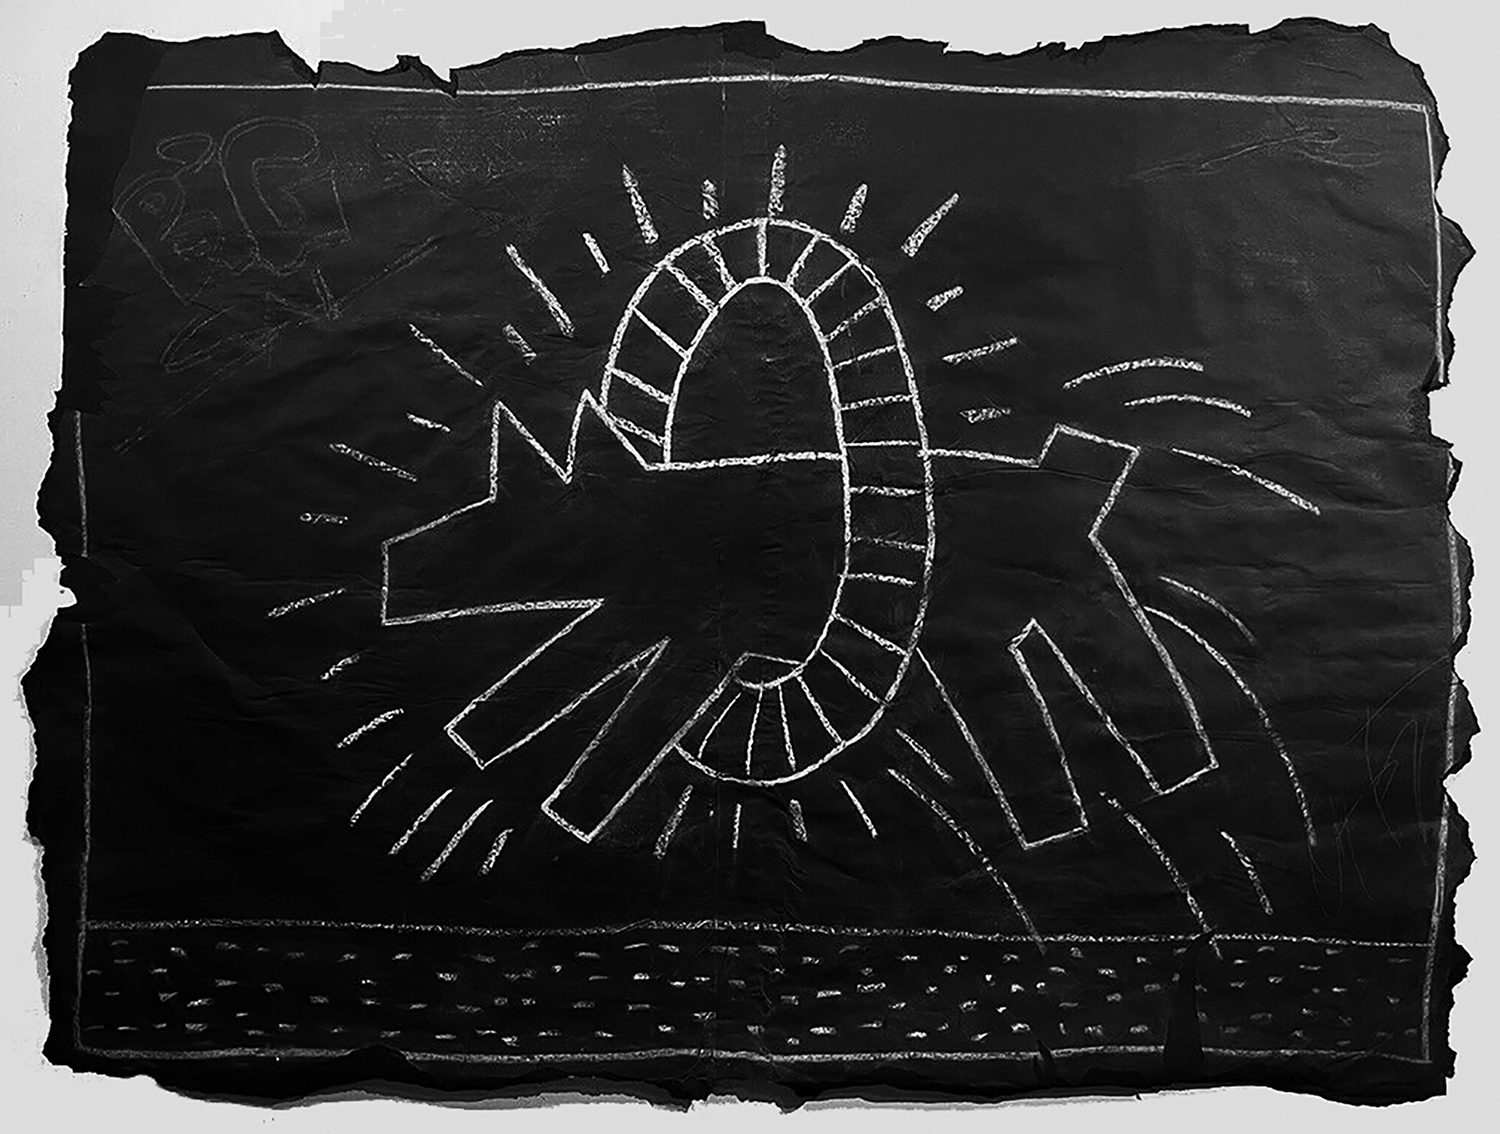 Keith Haring: Subway Drawings